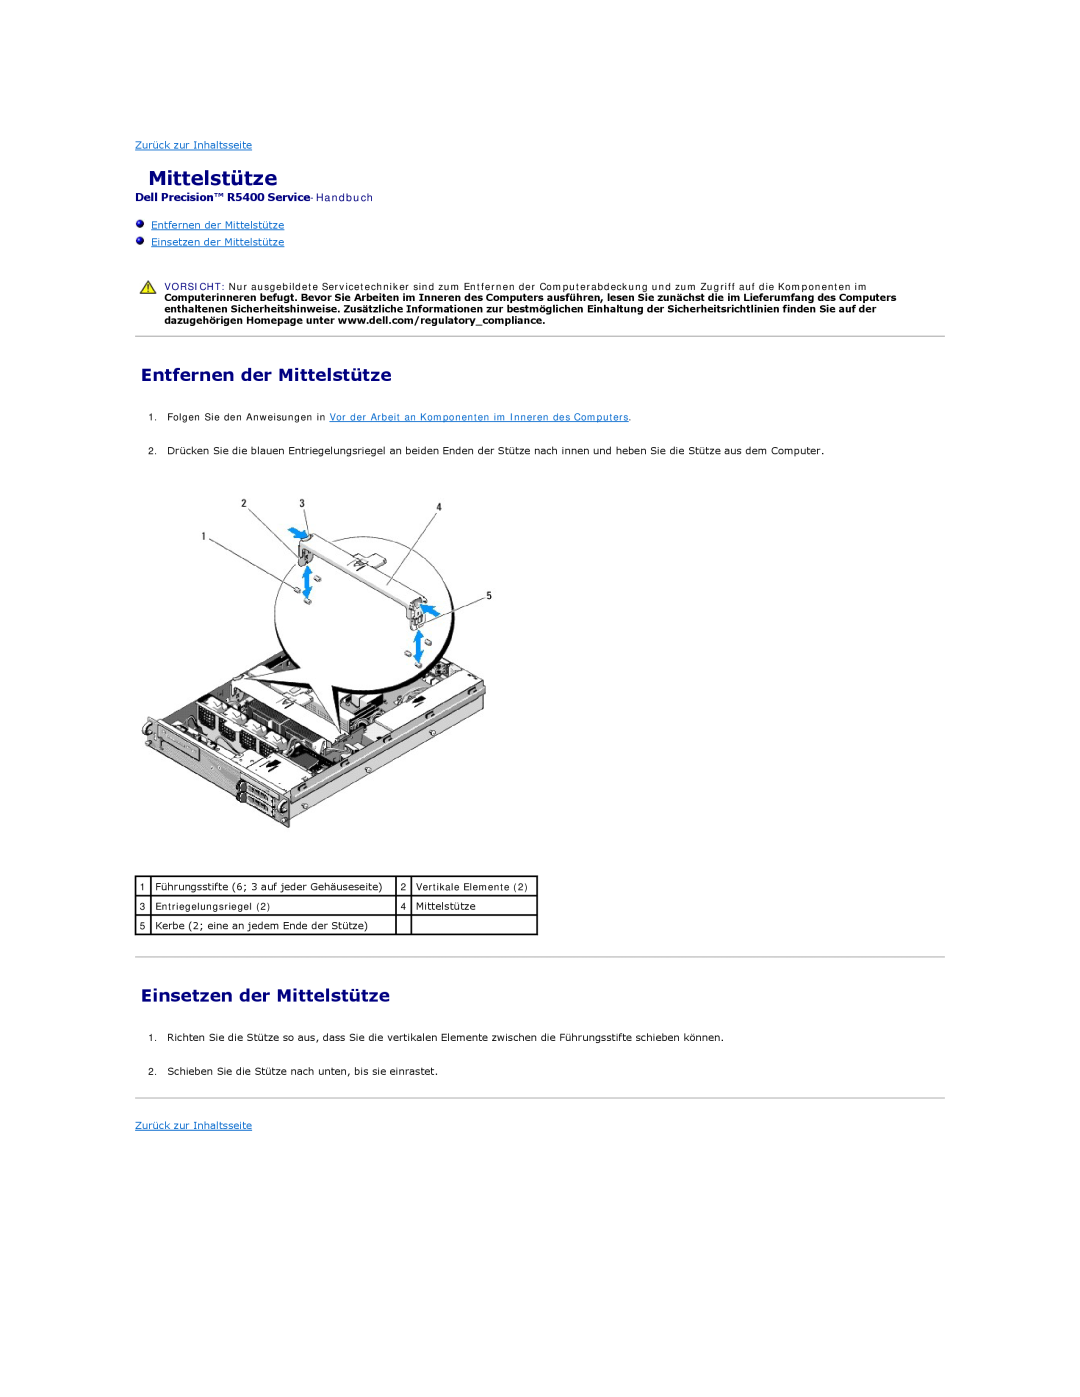 Dell manual Entfernen der Mittelstütze, Einsetzen der Mittelstütze, Dell Precision R5400 Service-Handbuch 